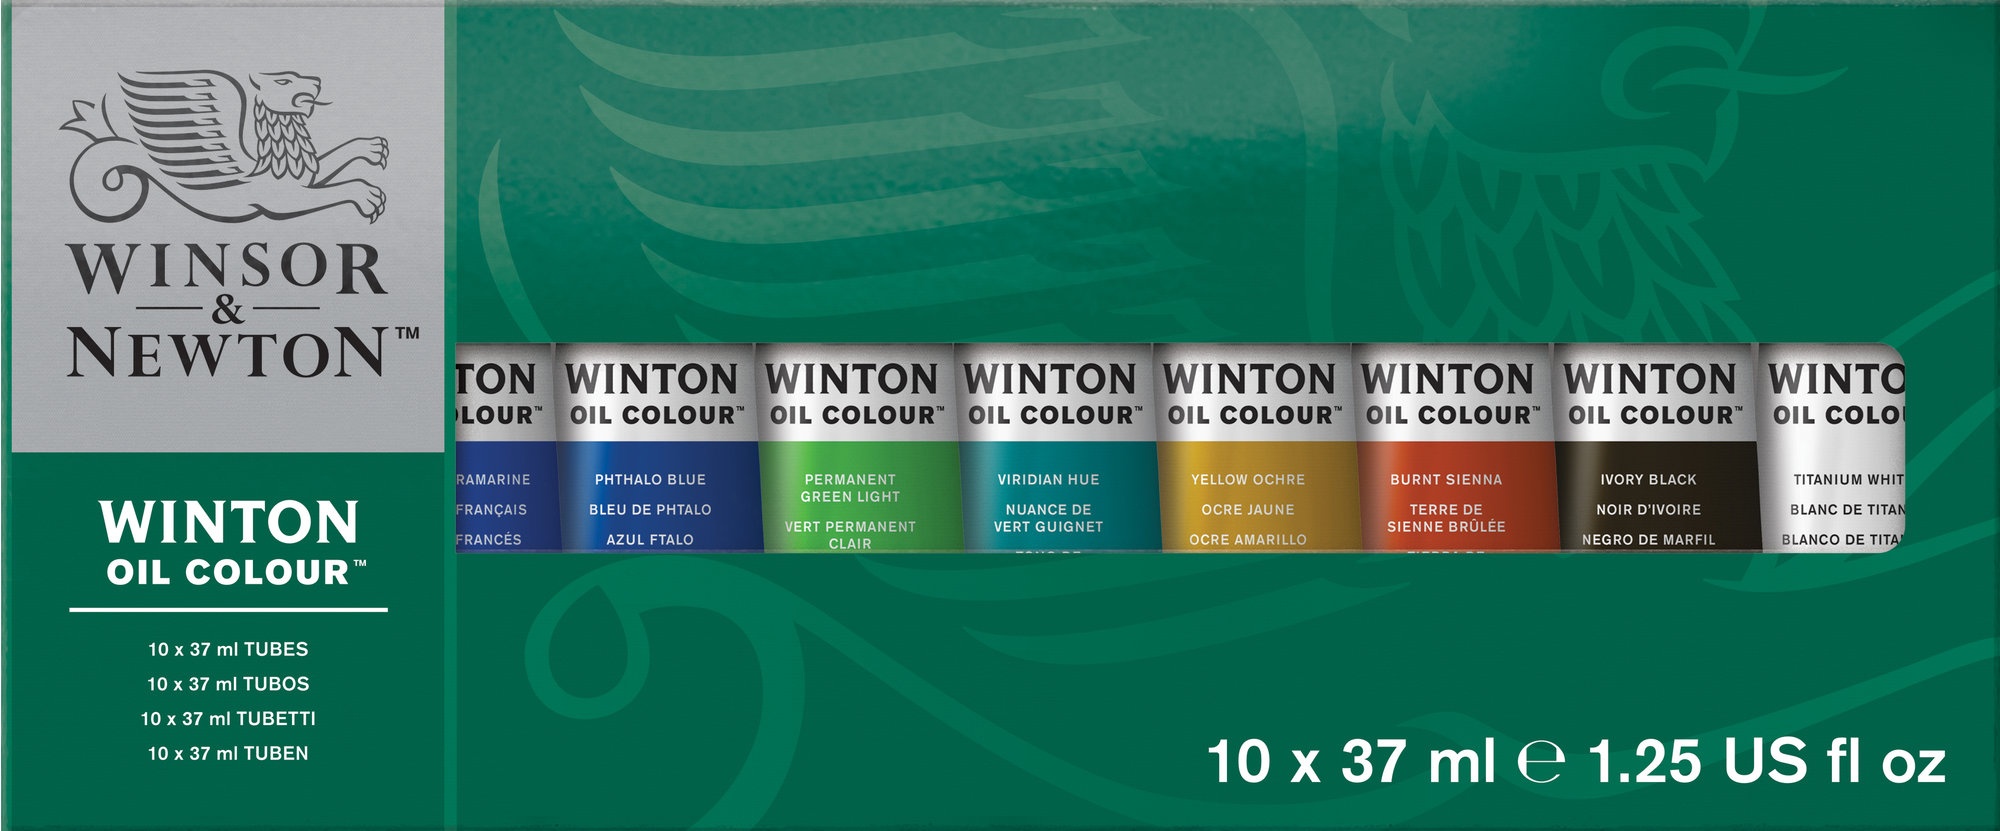 Набор красок масляных красок WINTON 10цв.по 37мл, картонная уп-ка по 6 795.00 руб от Winsor&Newton